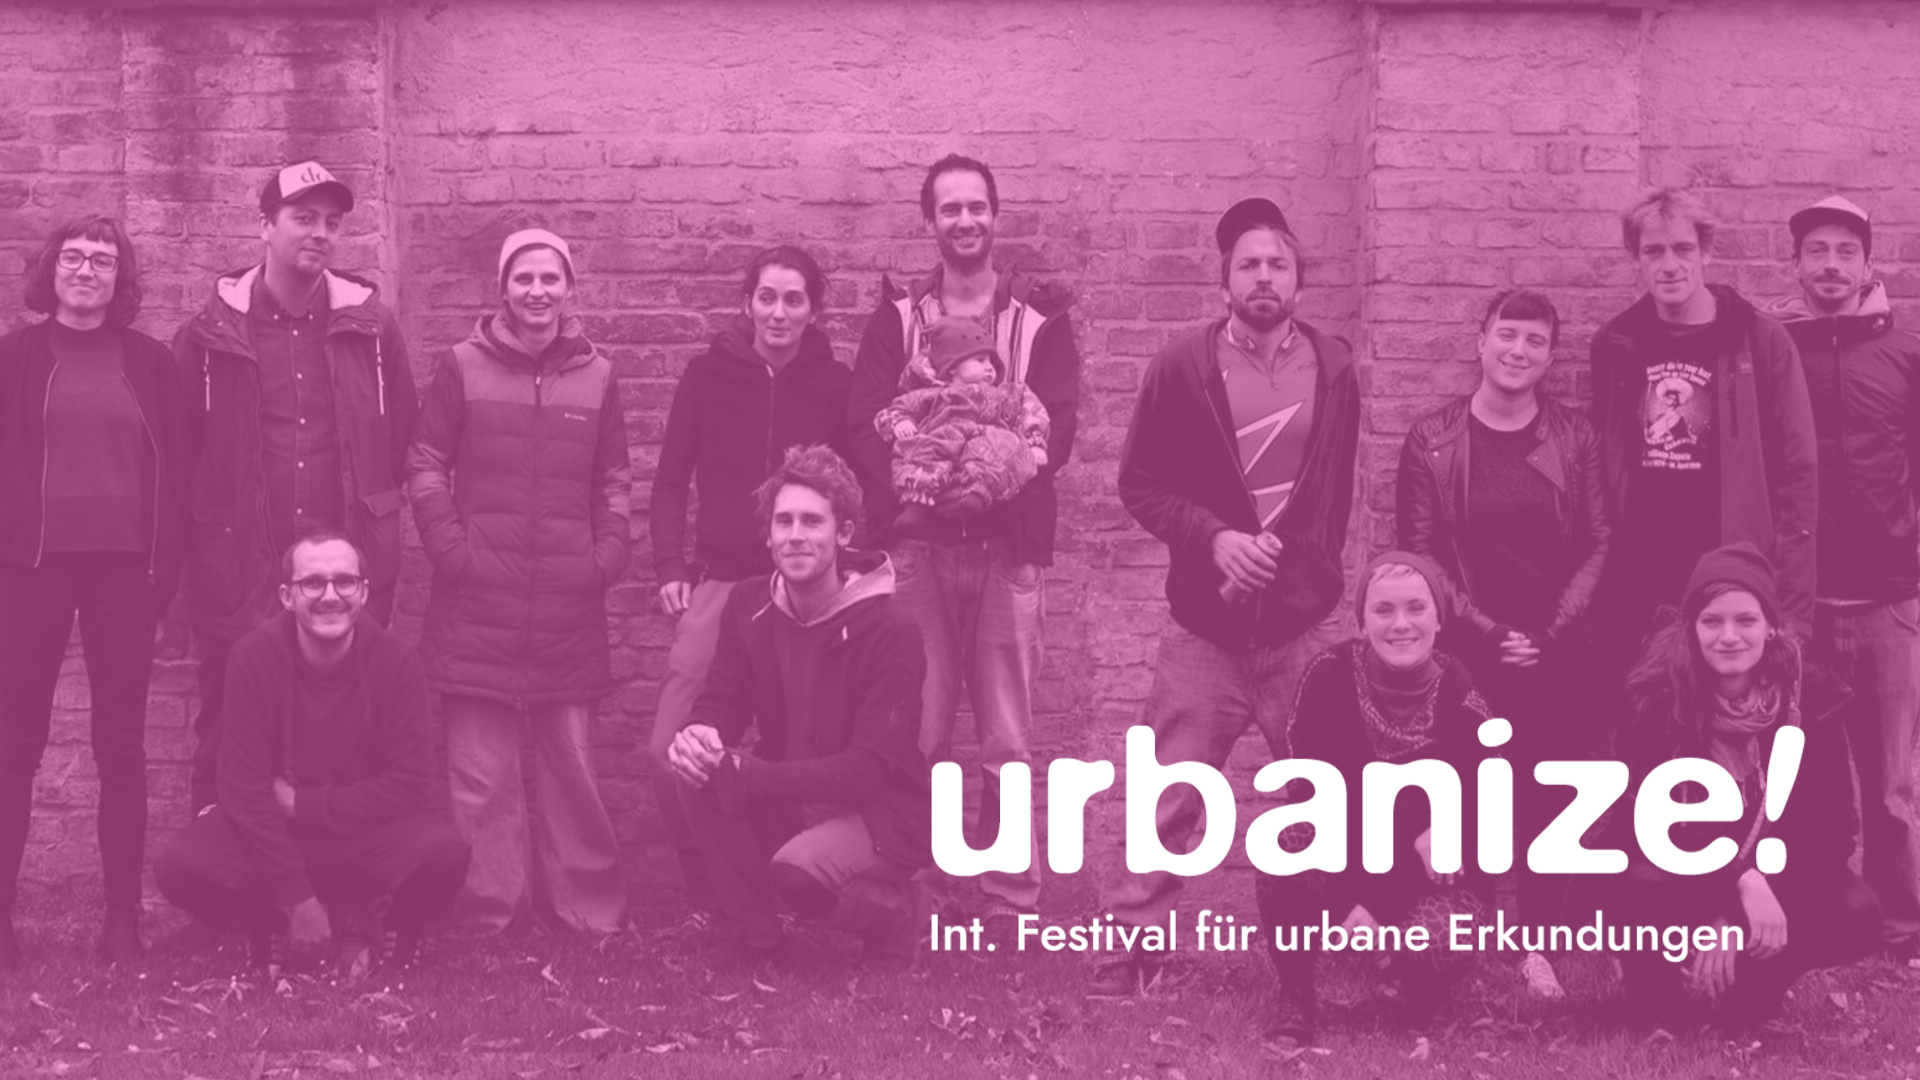 SchloR zu Gast am Urbanize! Festival 2019